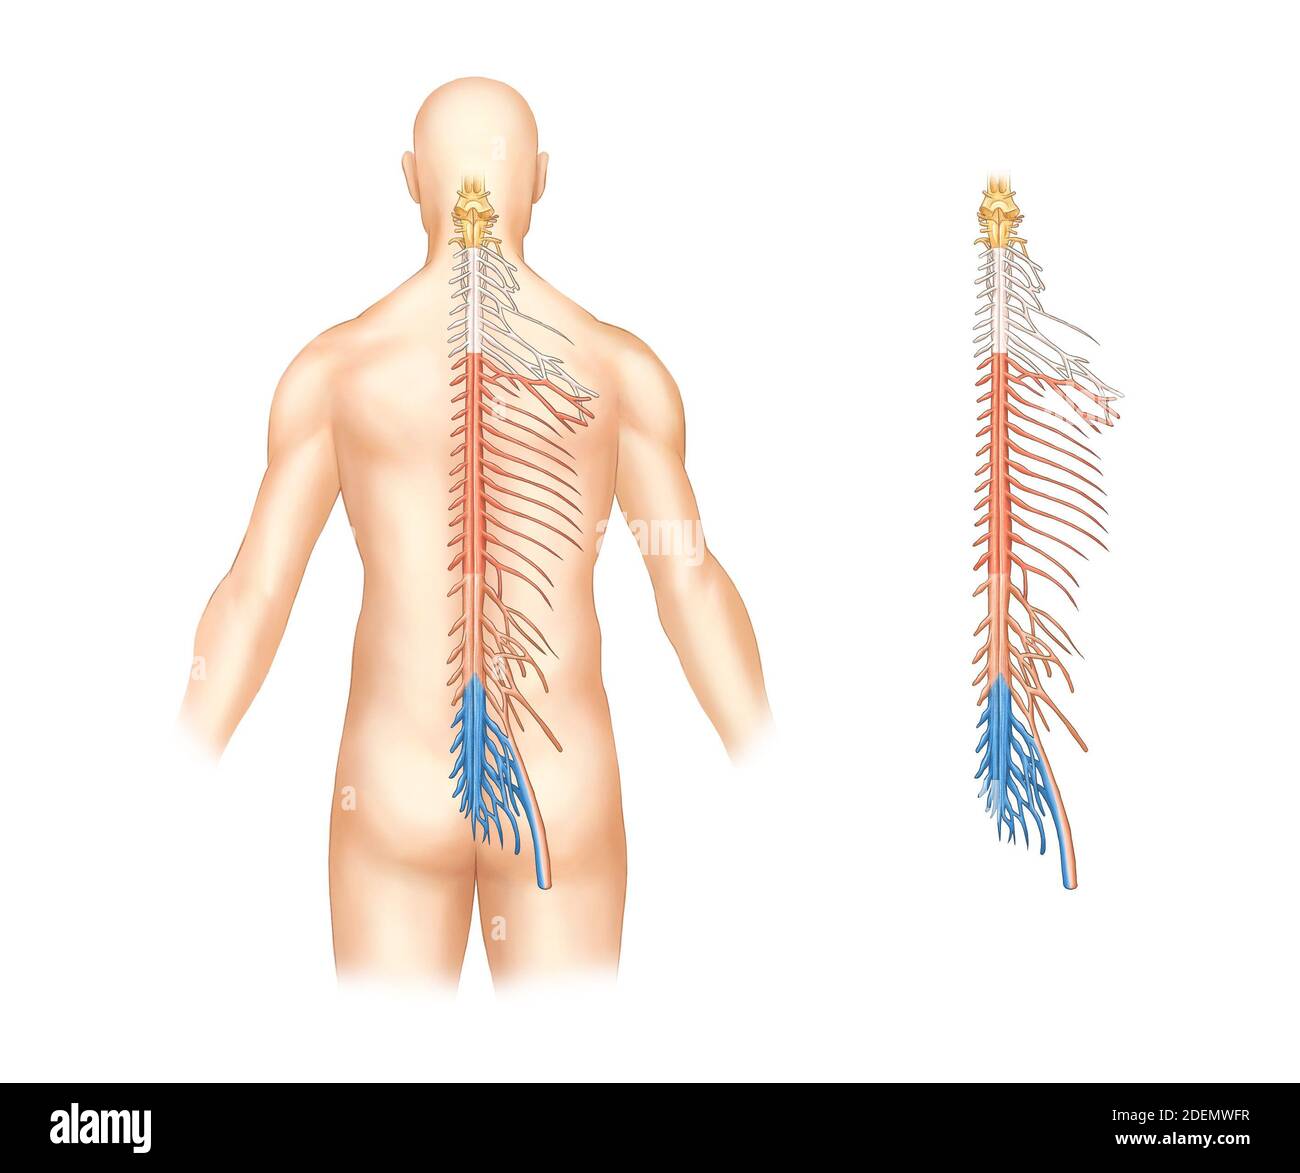 anatomie du système nerveux de la colonne vertébrale Photo Stock - Alamy